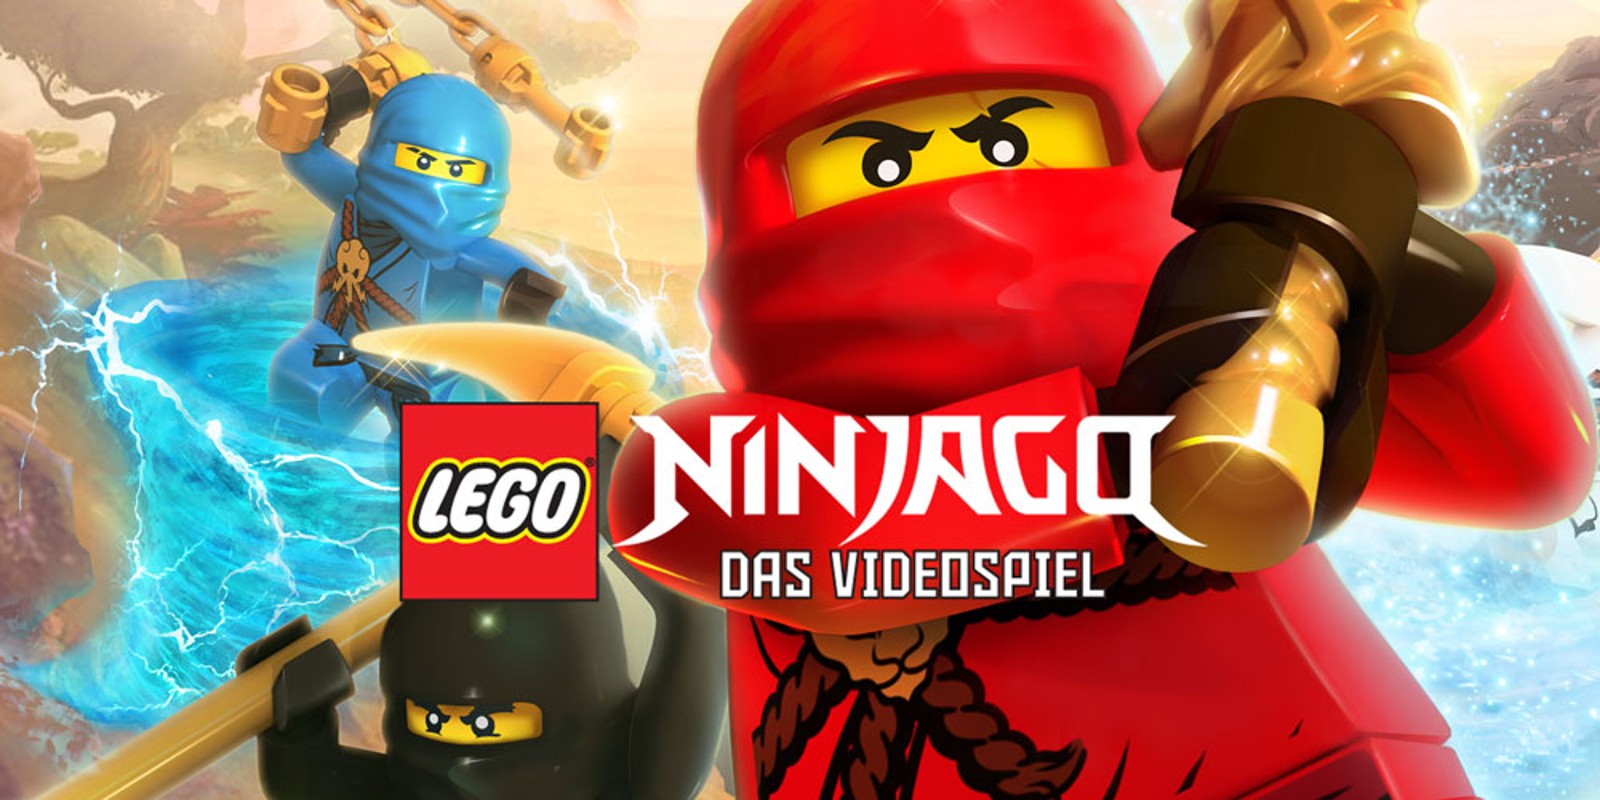 LEGO NINJAGO: DAS VIDEOSPIEL